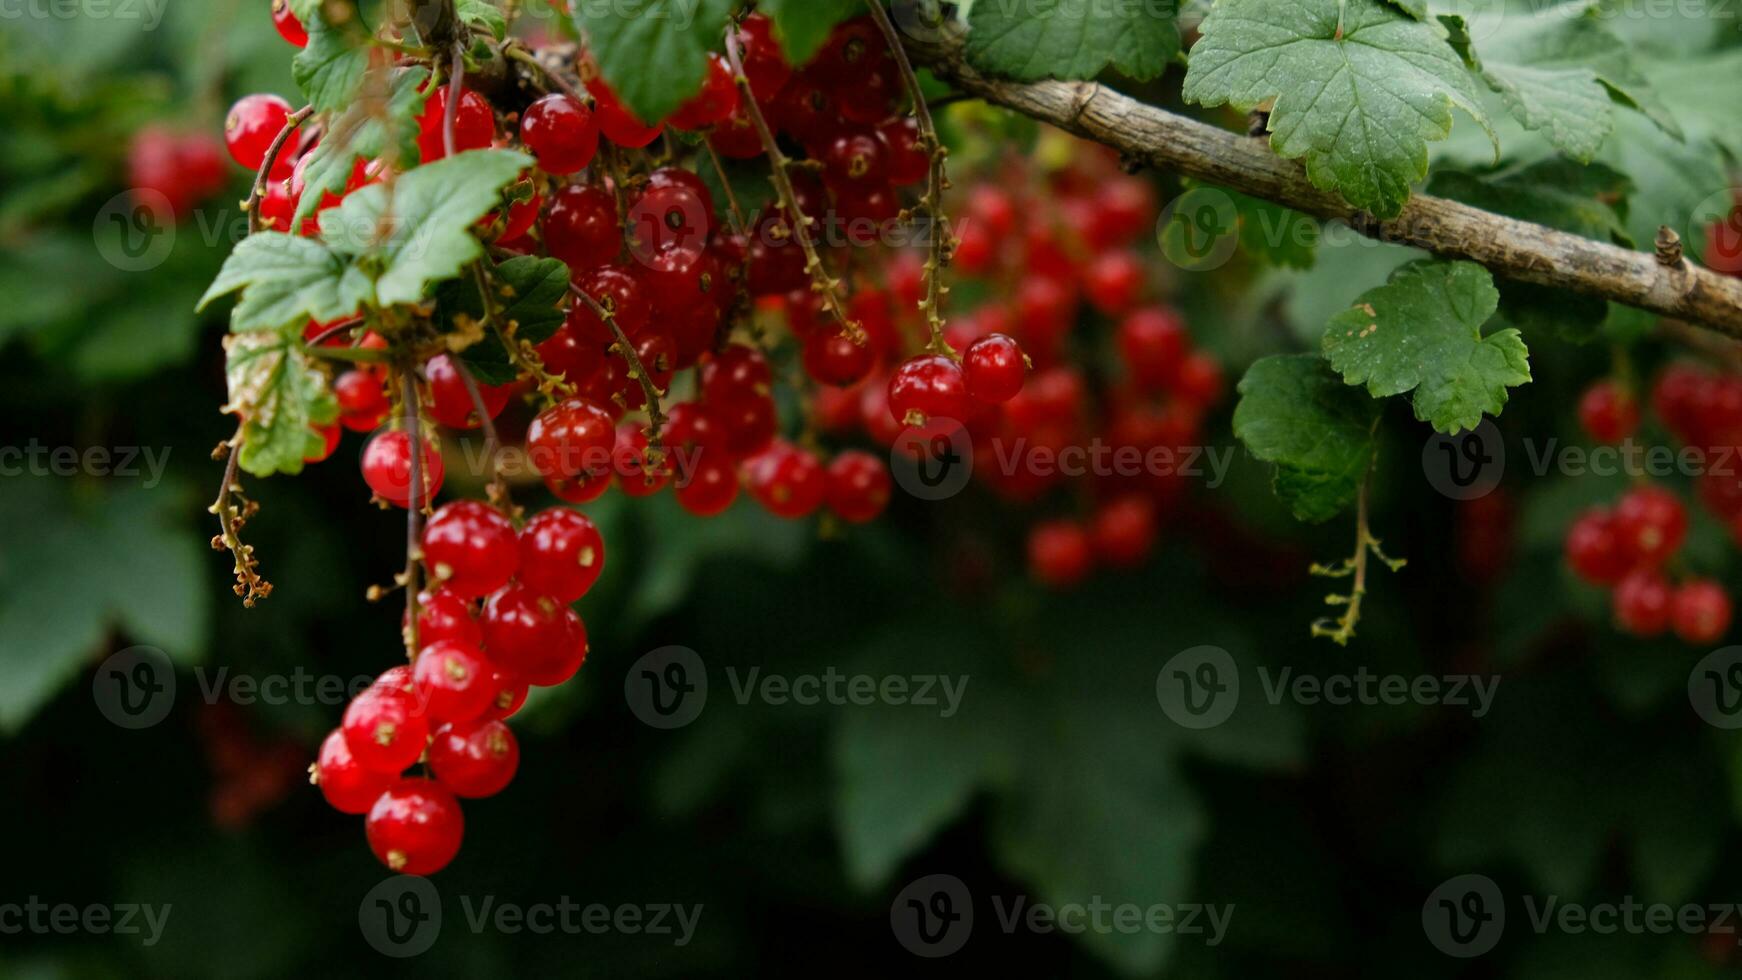 clusters van rijp rood krenten hangen Aan een struik. gezond voedsel concept. groeit planten en bessen in de tuin. de bessen van rood bes net zo een voeding met vitamines voor veganistisch. foto